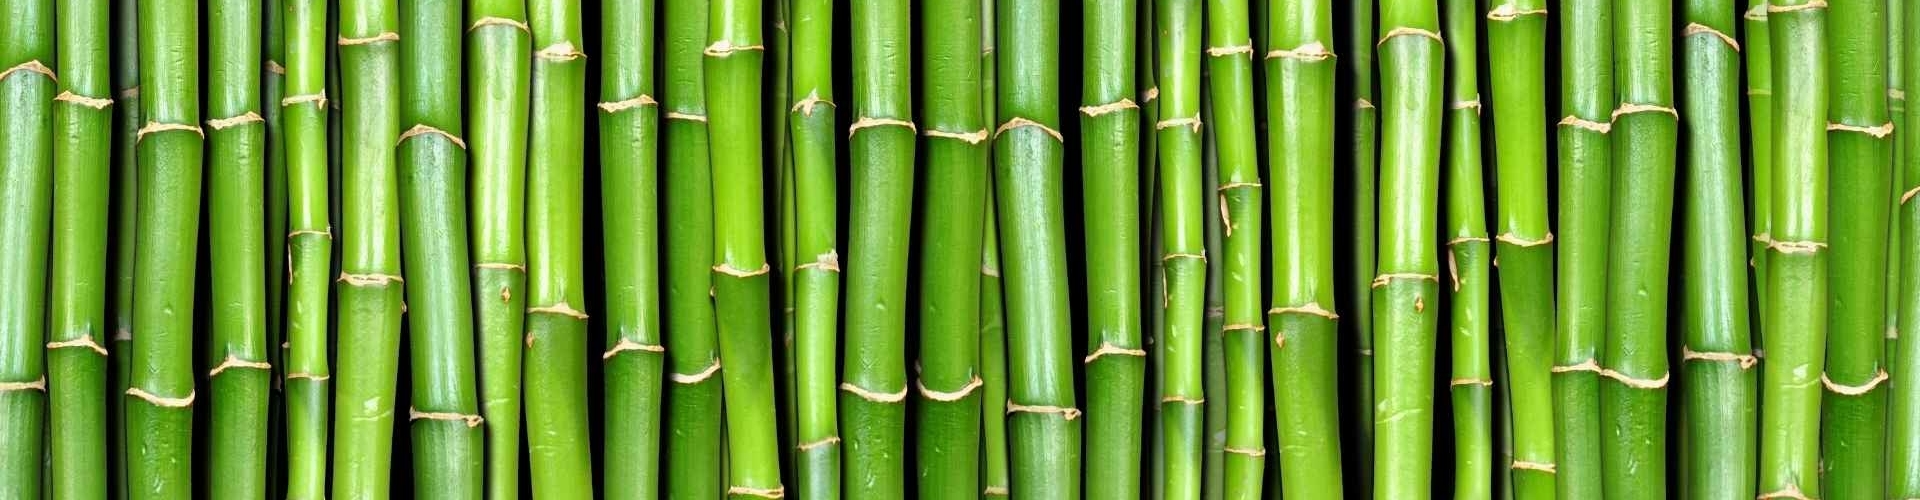 bamboe producten kopen